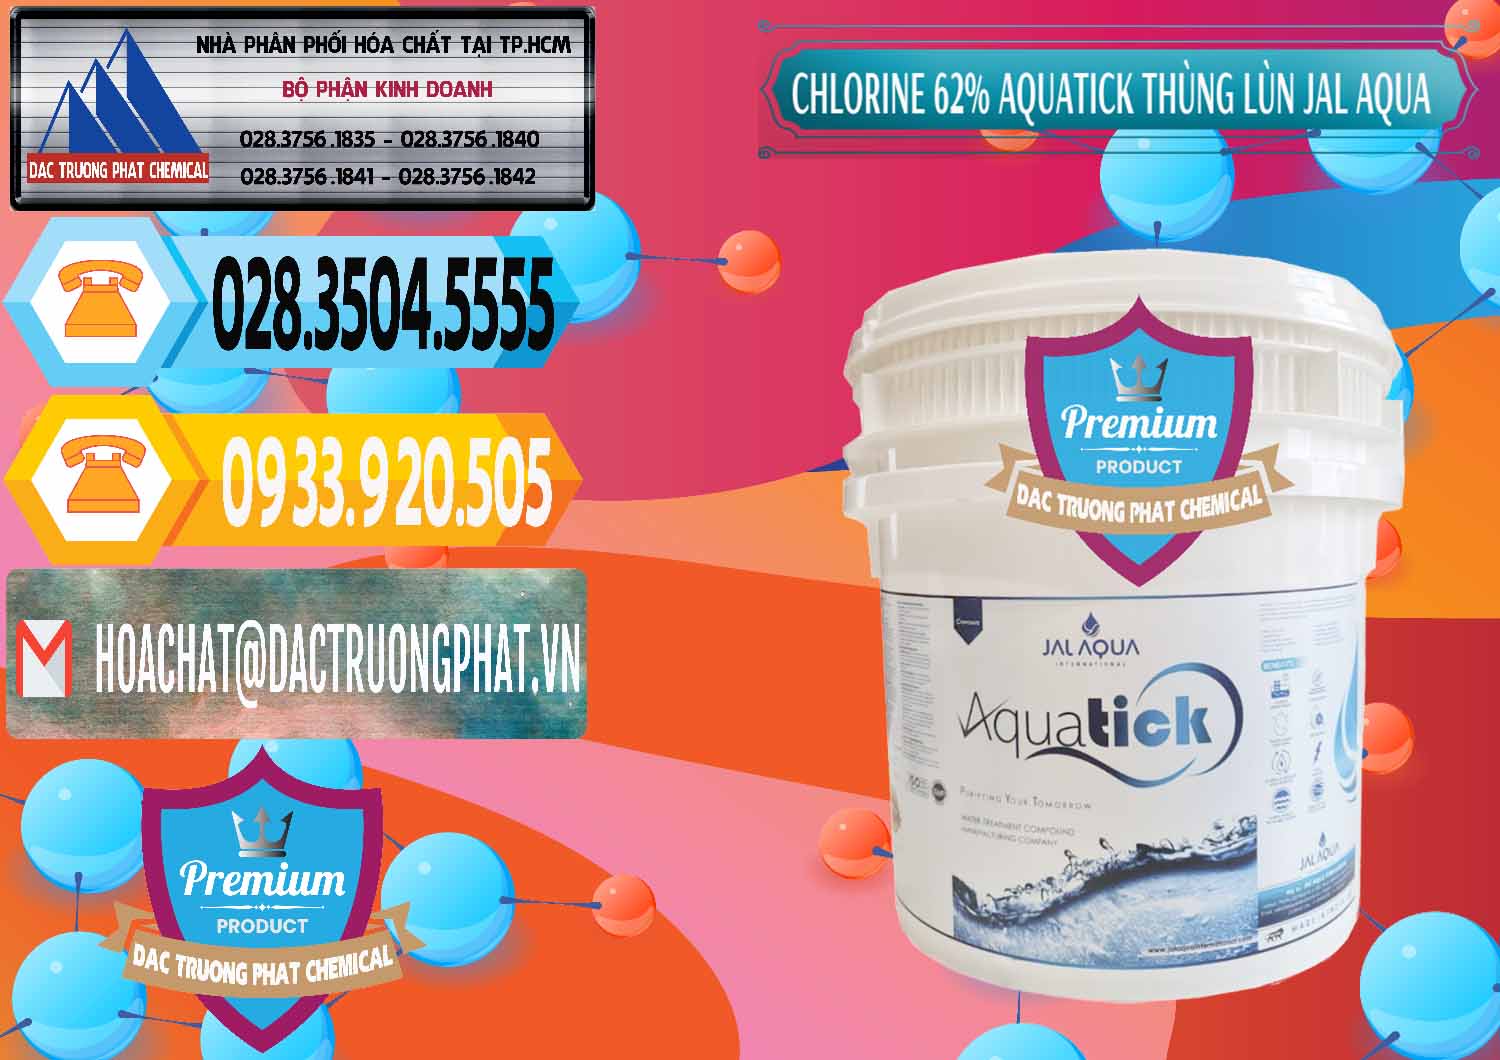 Cty phân phối & bán Chlorine – Clorin 62% Aquatick Thùng Lùn Jal Aqua Ấn Độ India - 0238 - Cty chuyên nhập khẩu _ cung cấp hóa chất tại TP.HCM - hoachattayrua.net